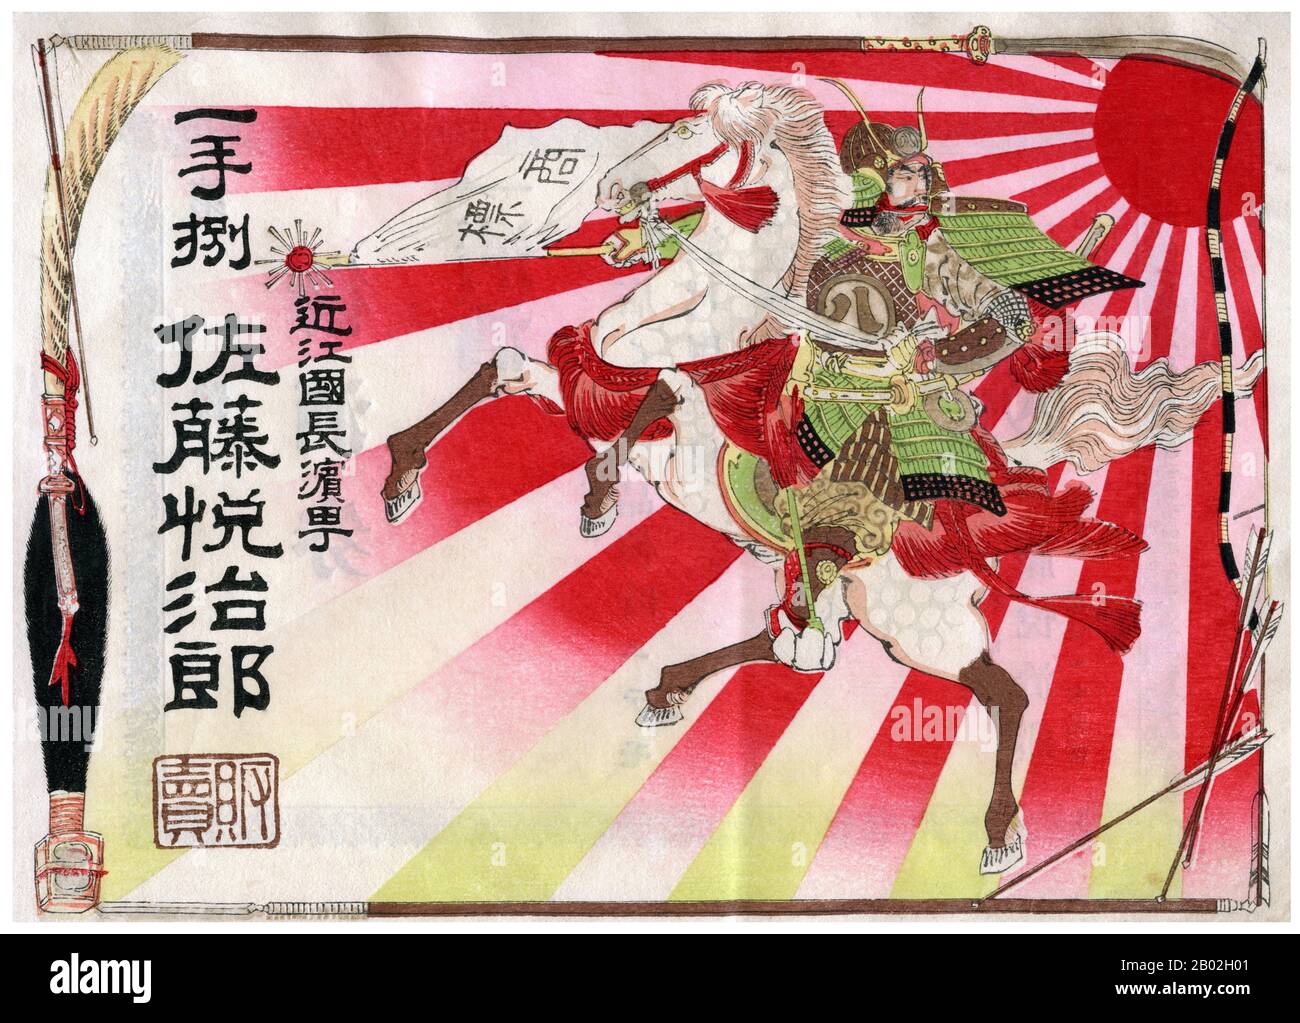 Geschenkgutschein der Taisho-Ära, aus einem speziellen Shop in Japan, um des Veredelens willen. Zeigt einen Samurai zu Pferd, gegen eine verstrahlte, aufgehende Sonne; umrahmt von einer Reihe von Samurai-Waffen (einschließlich einer Naginata über der Oberseite und einem Yari über der Unterseite). Japanischer Holzblockdruck als kommerzielle Kunst, sehr Anfang des 20. Jahrhunderts Stockfoto